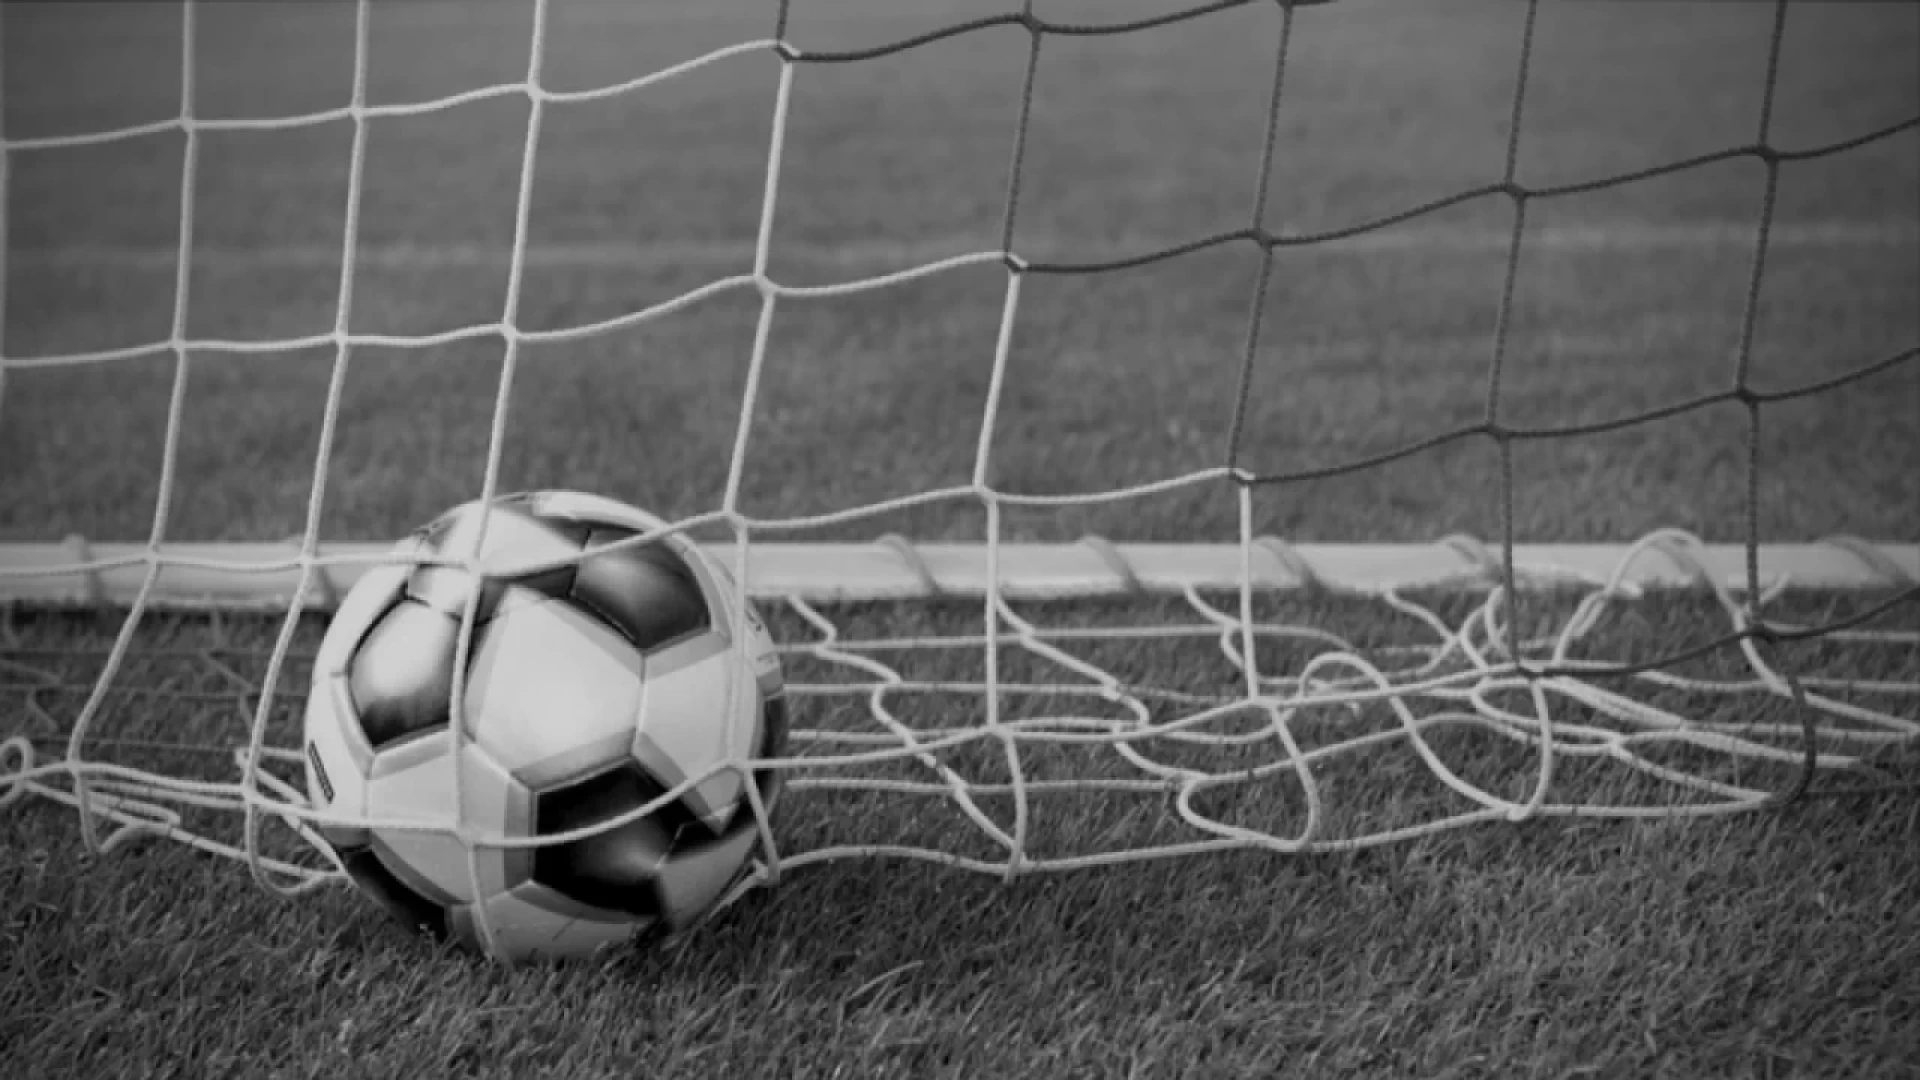 Serie D girone F, Eccellenza, Promozione e Prima categoria girone A Molise: le gare in programma nel fine settimana